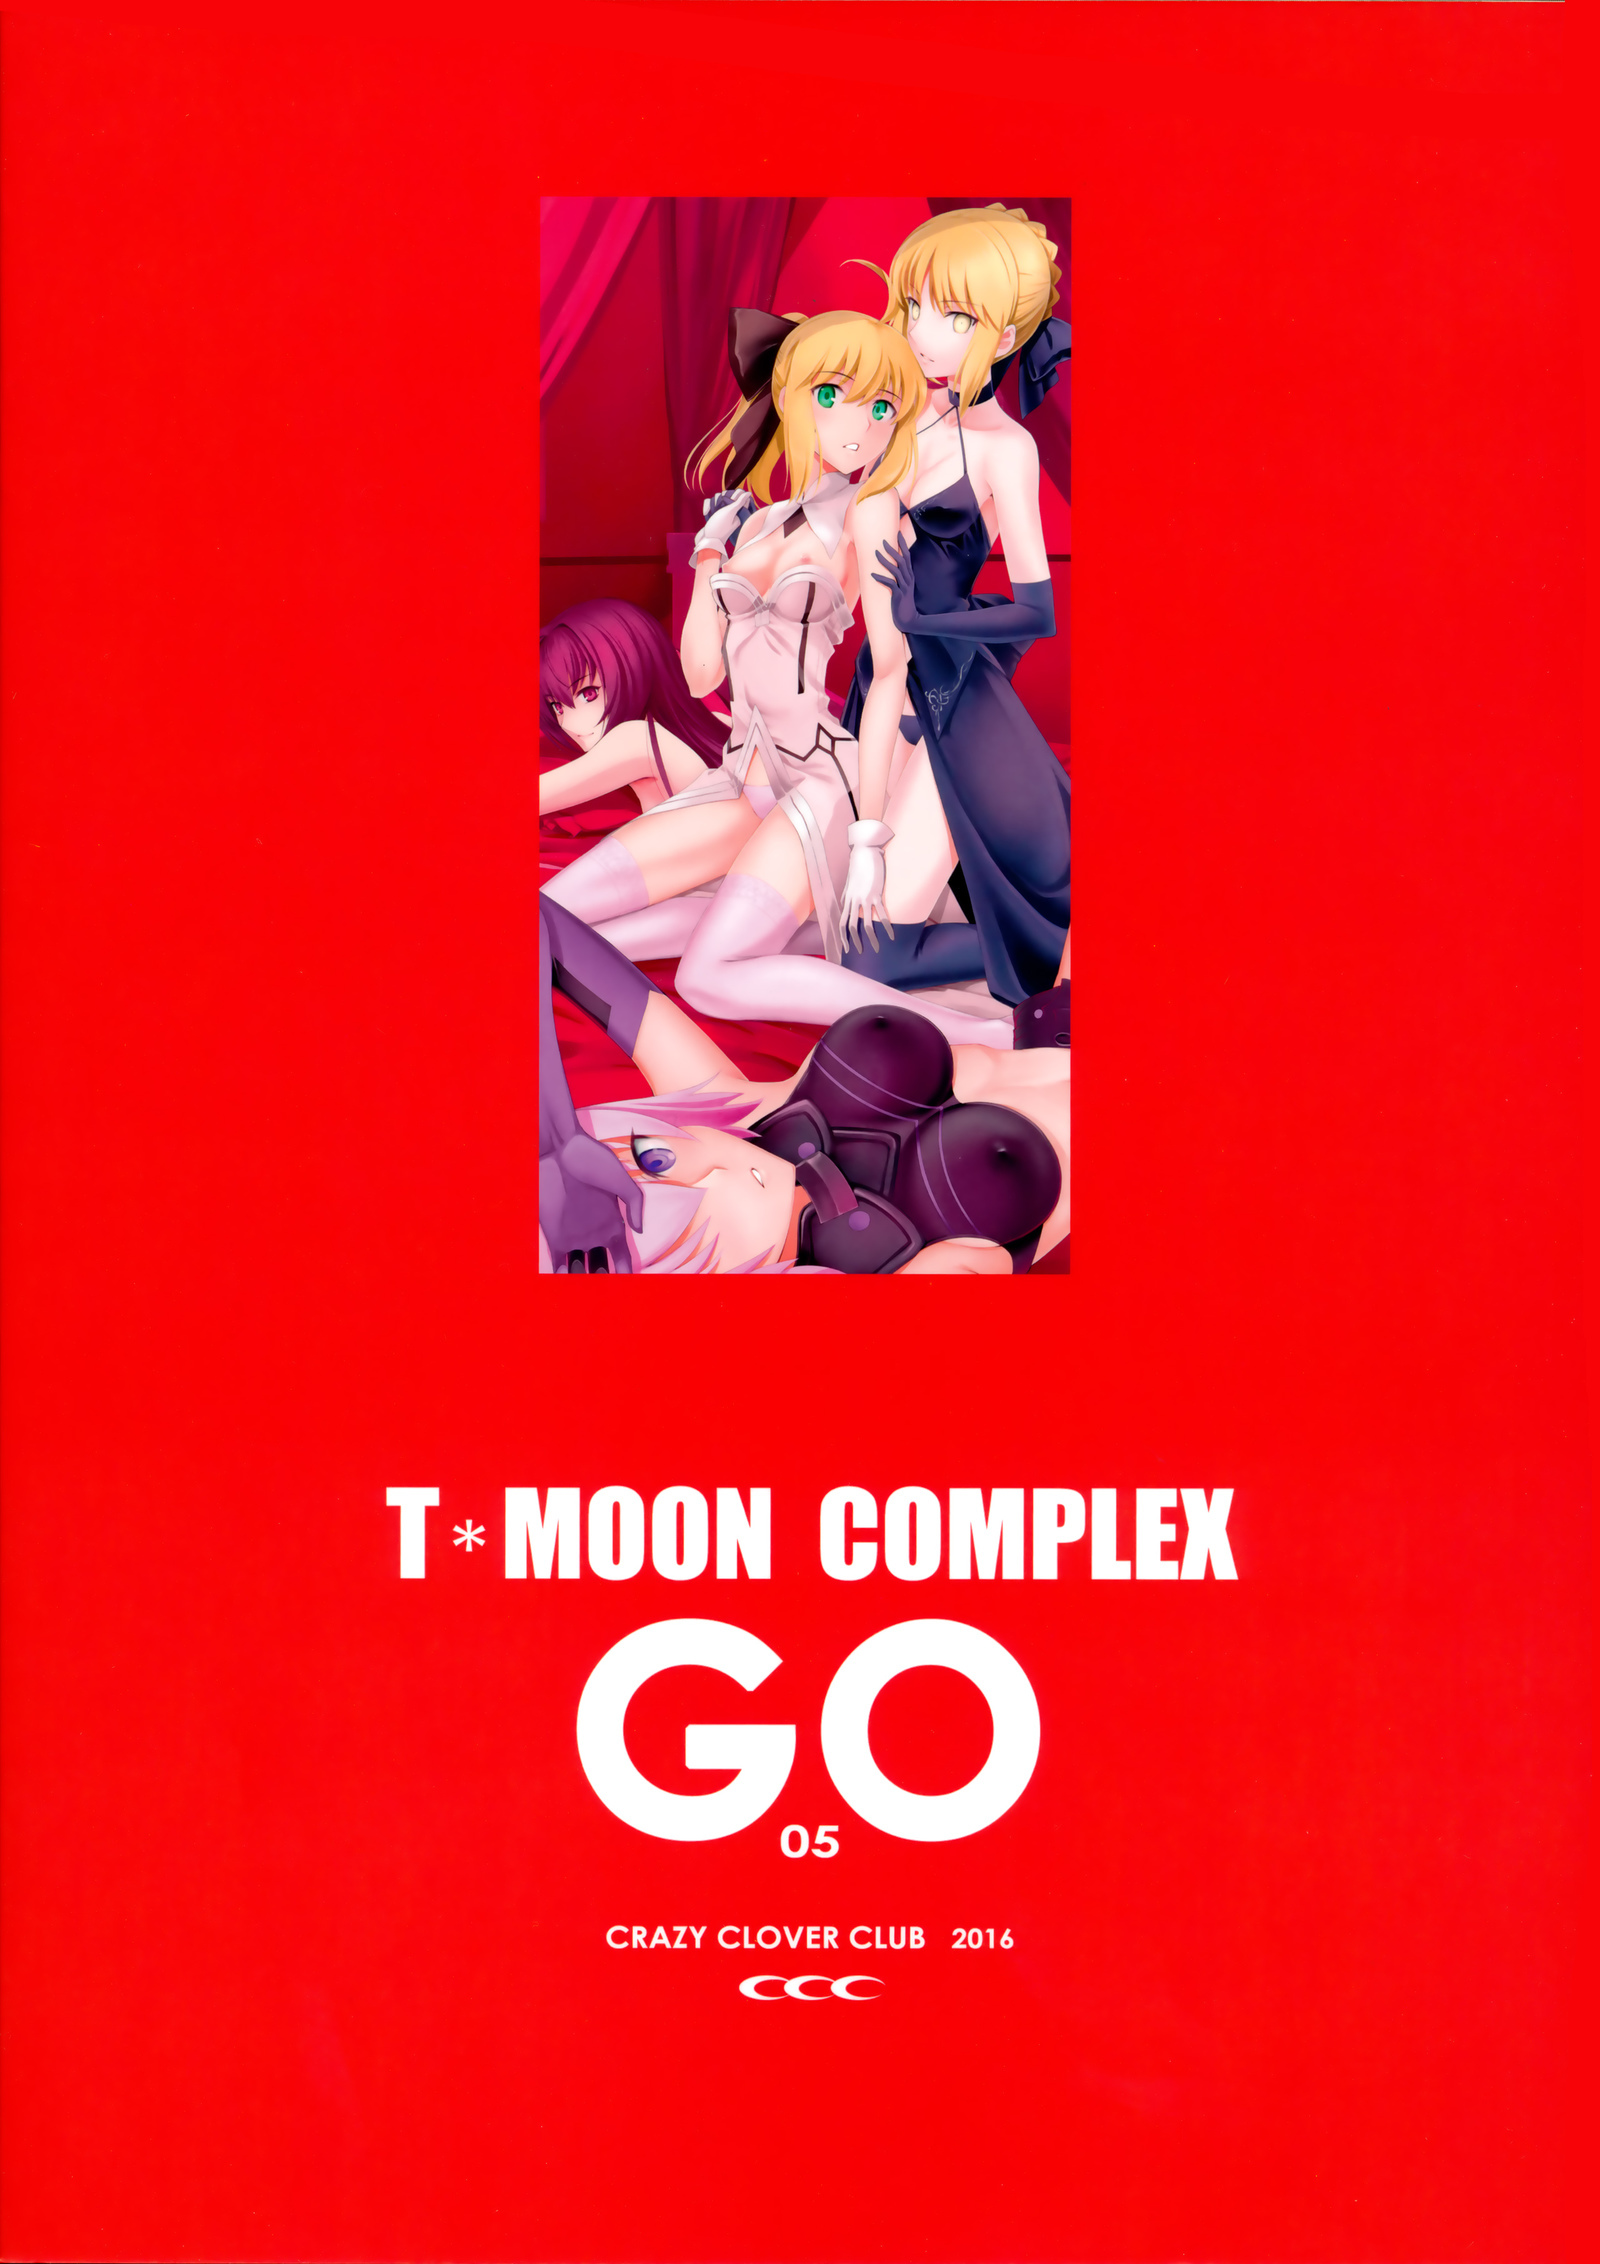 T*moon complex GO 5